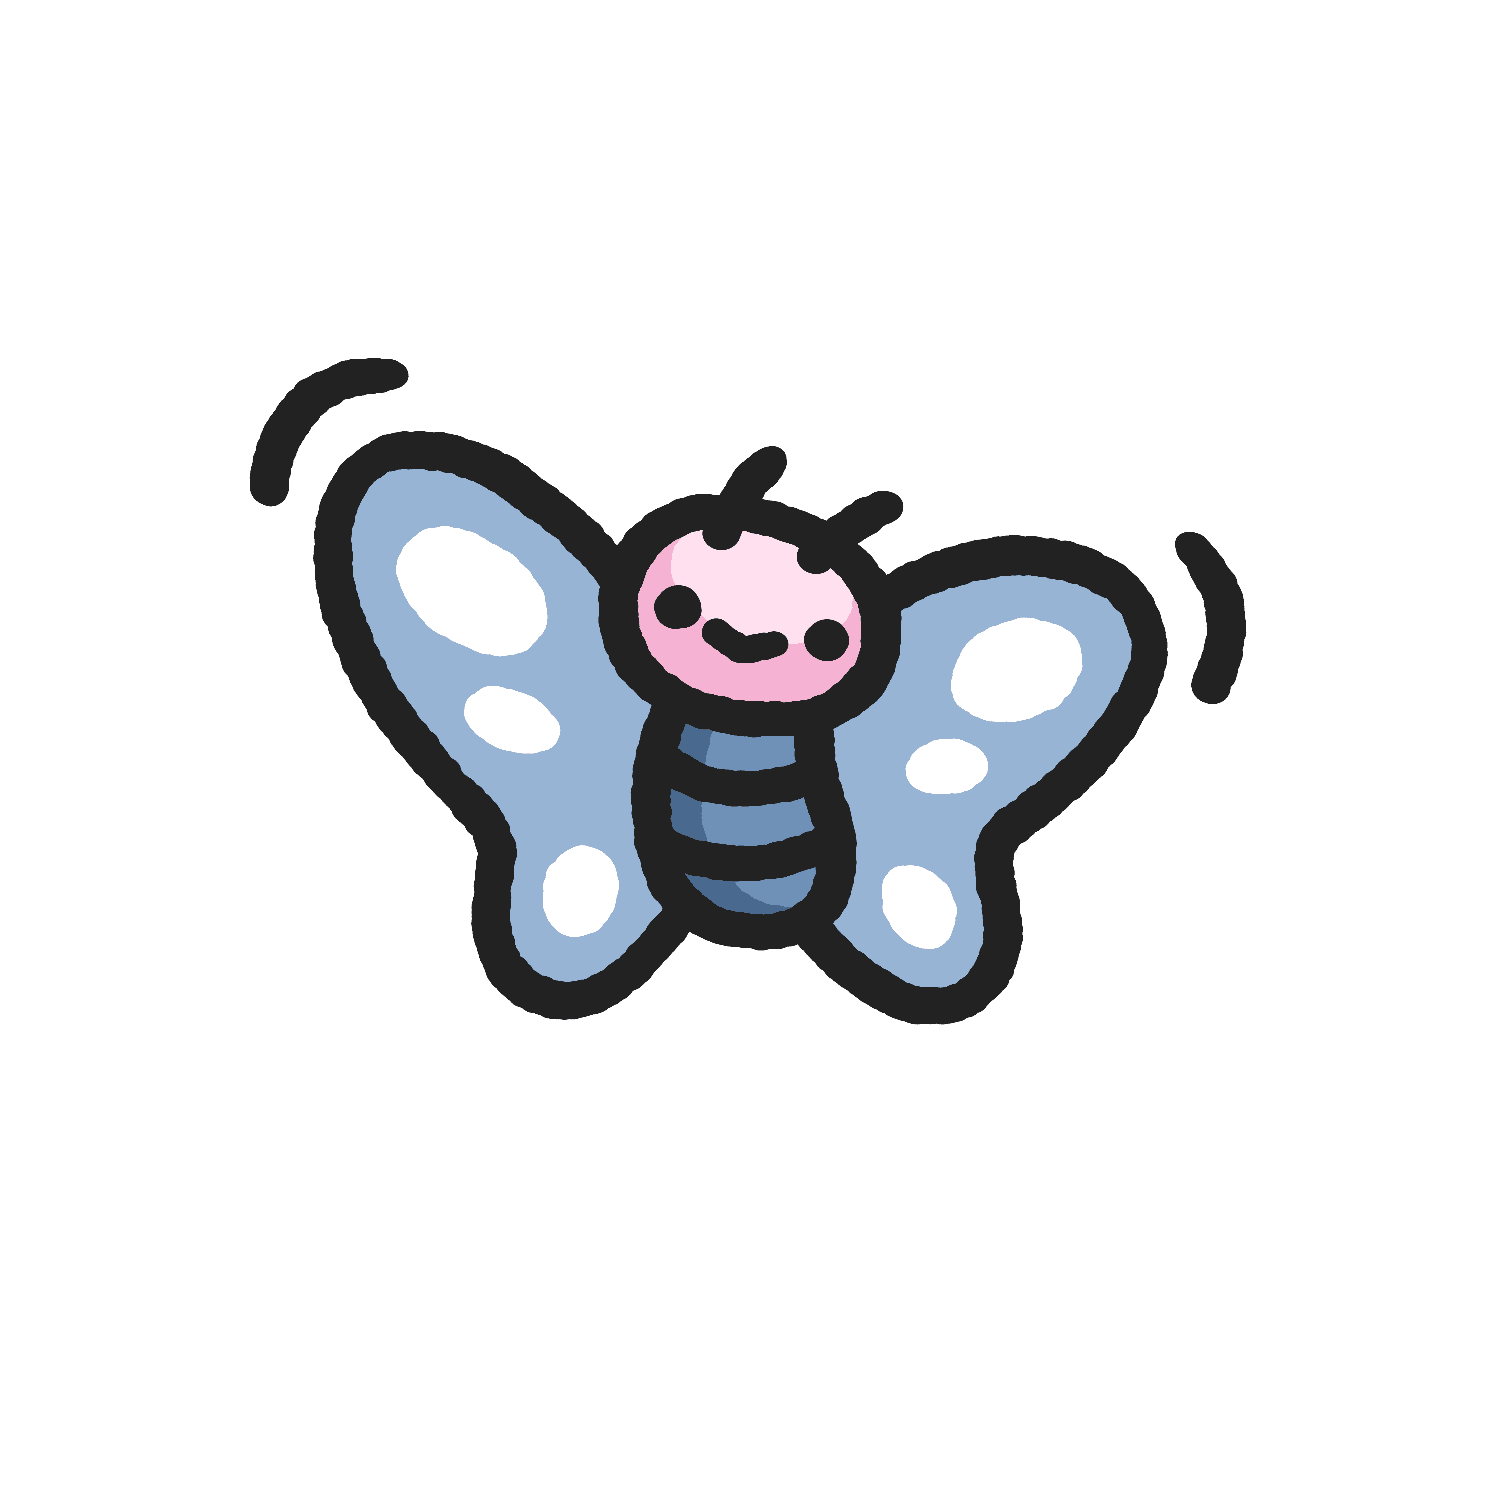 Cerulean Butterfly